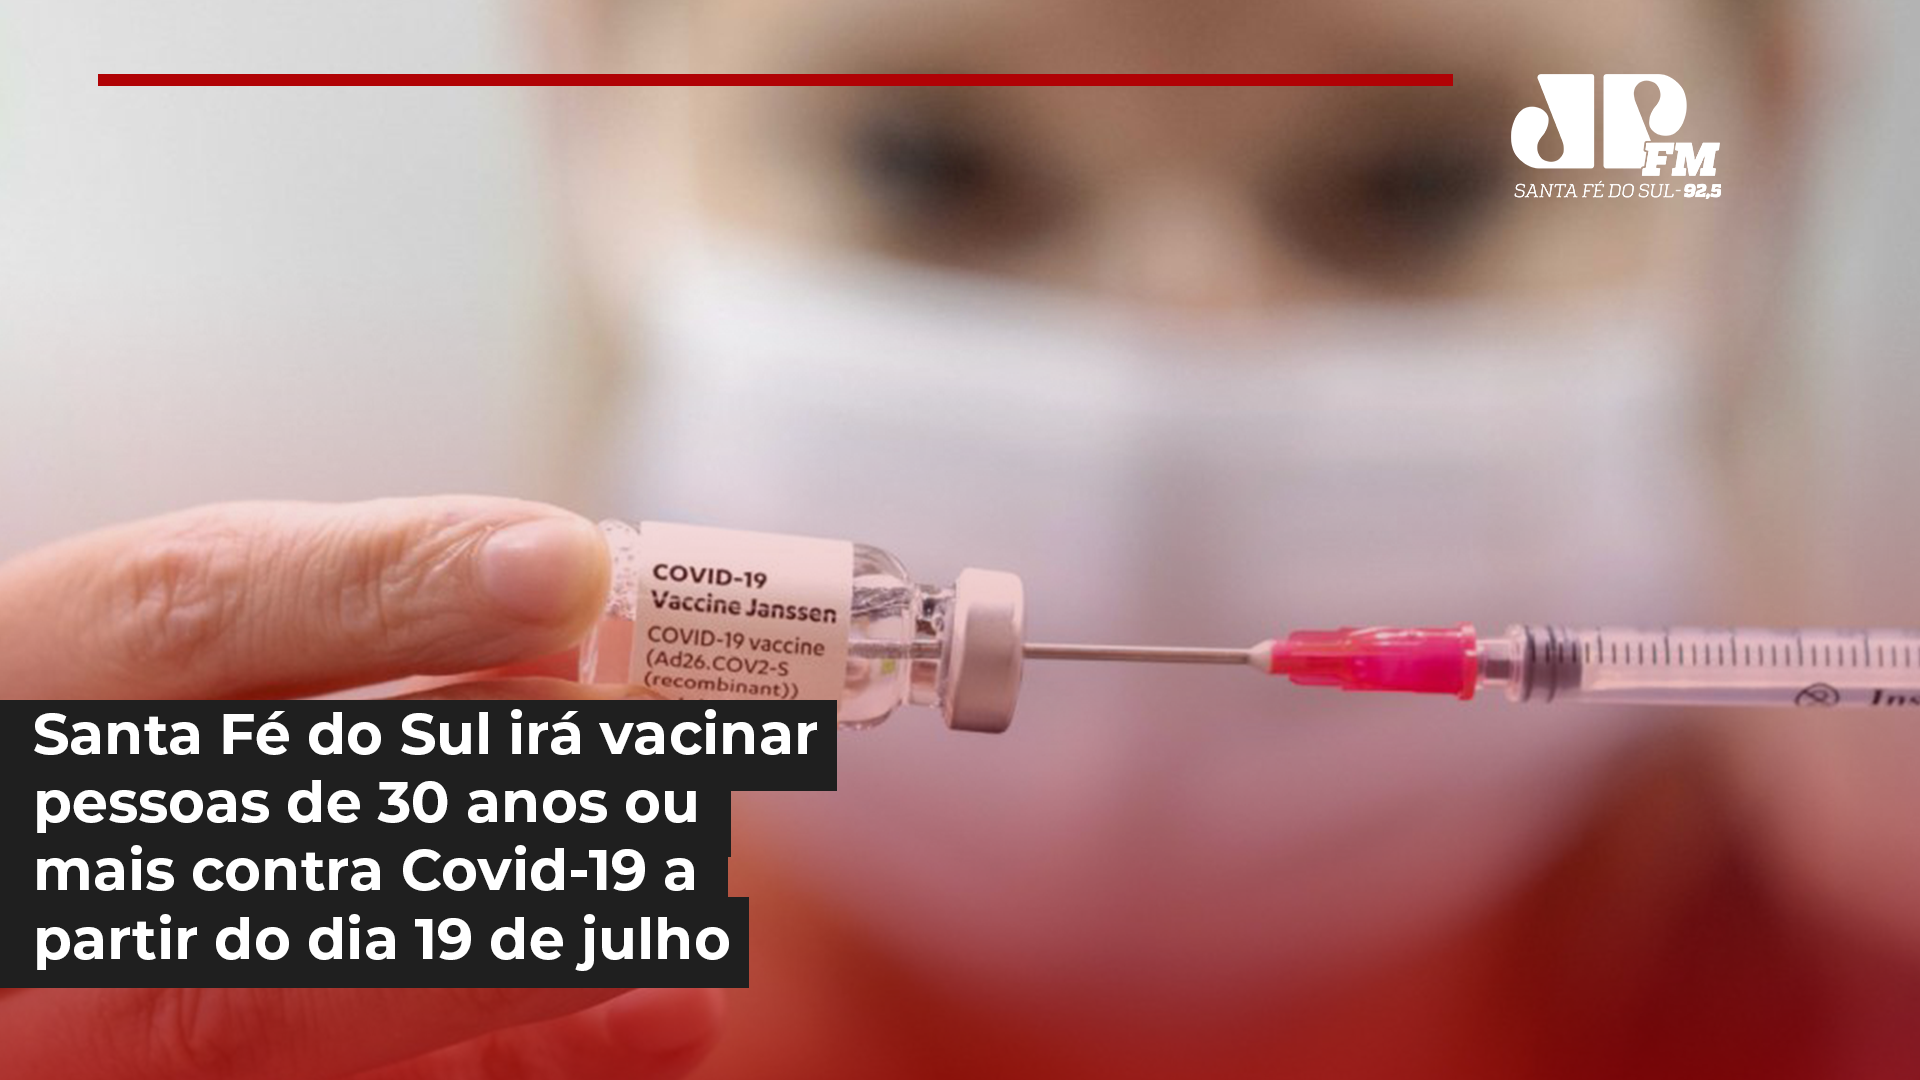 Santa Fé do Sul irá vacinar pessoas com 30 anos ou mais contra Covid-19 a partir do dia 19 de julho